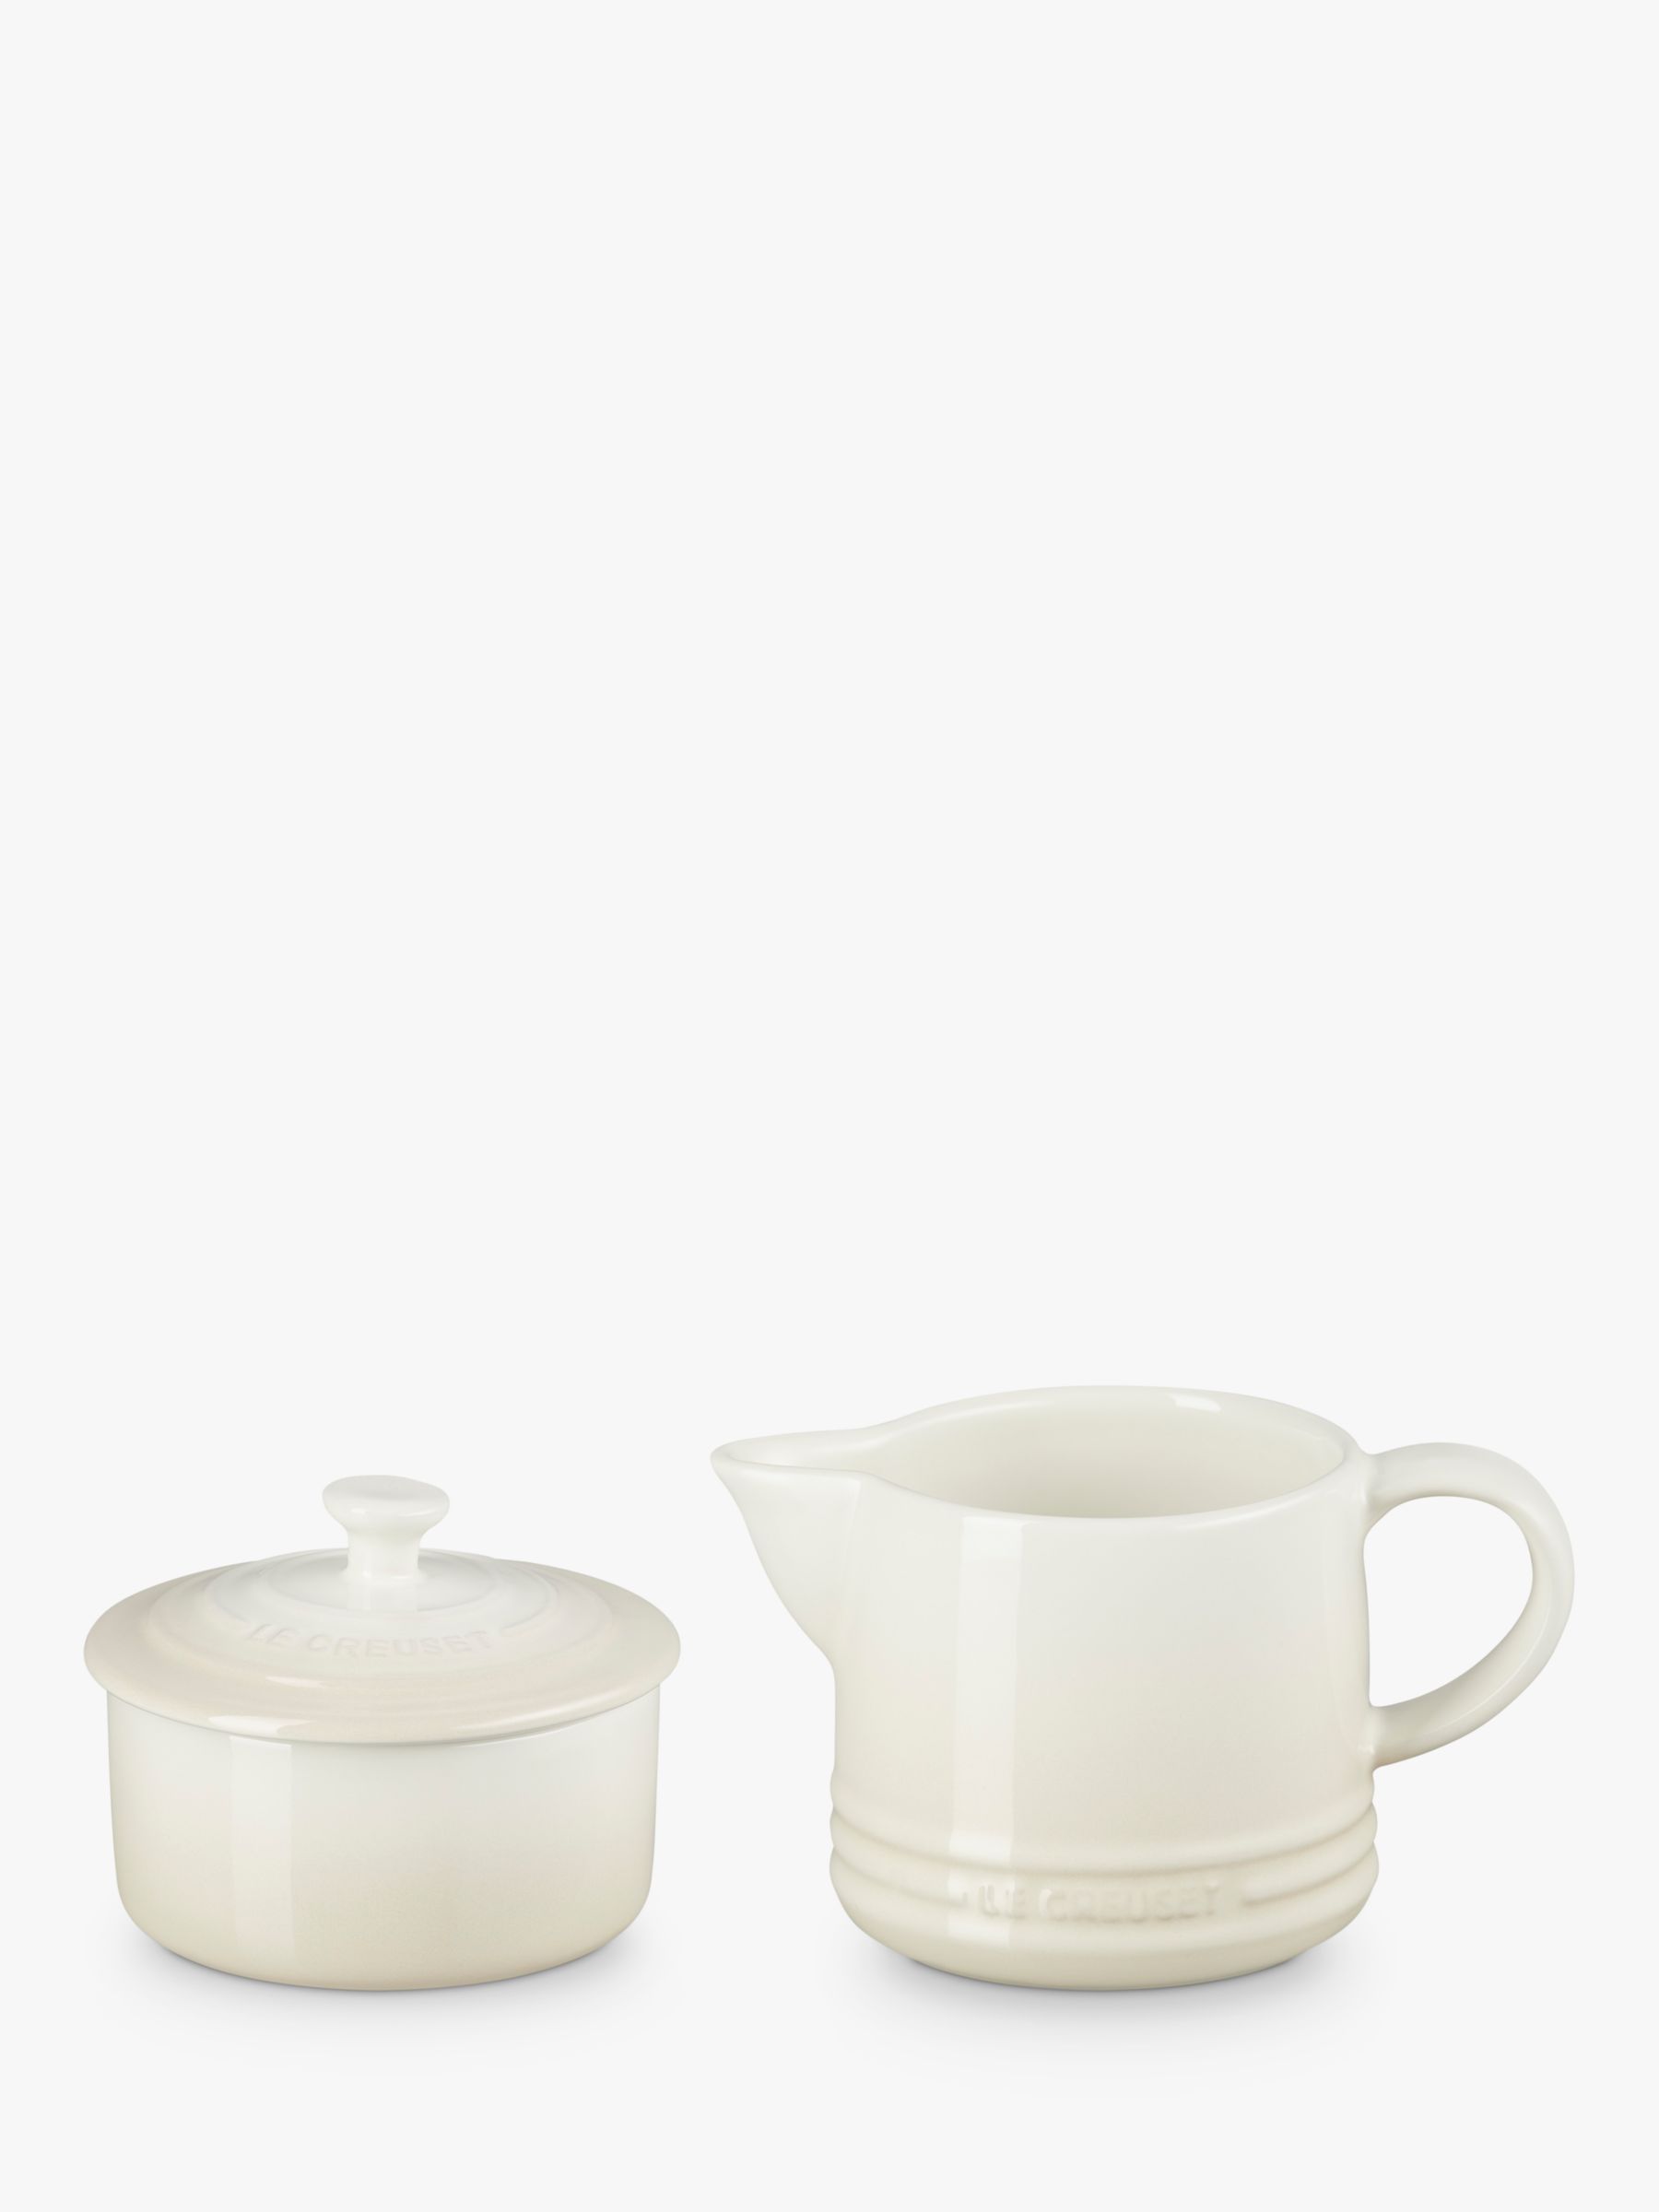 Le Creuset Stoneware Milk Jug & Sugar Pot Set, Meringue